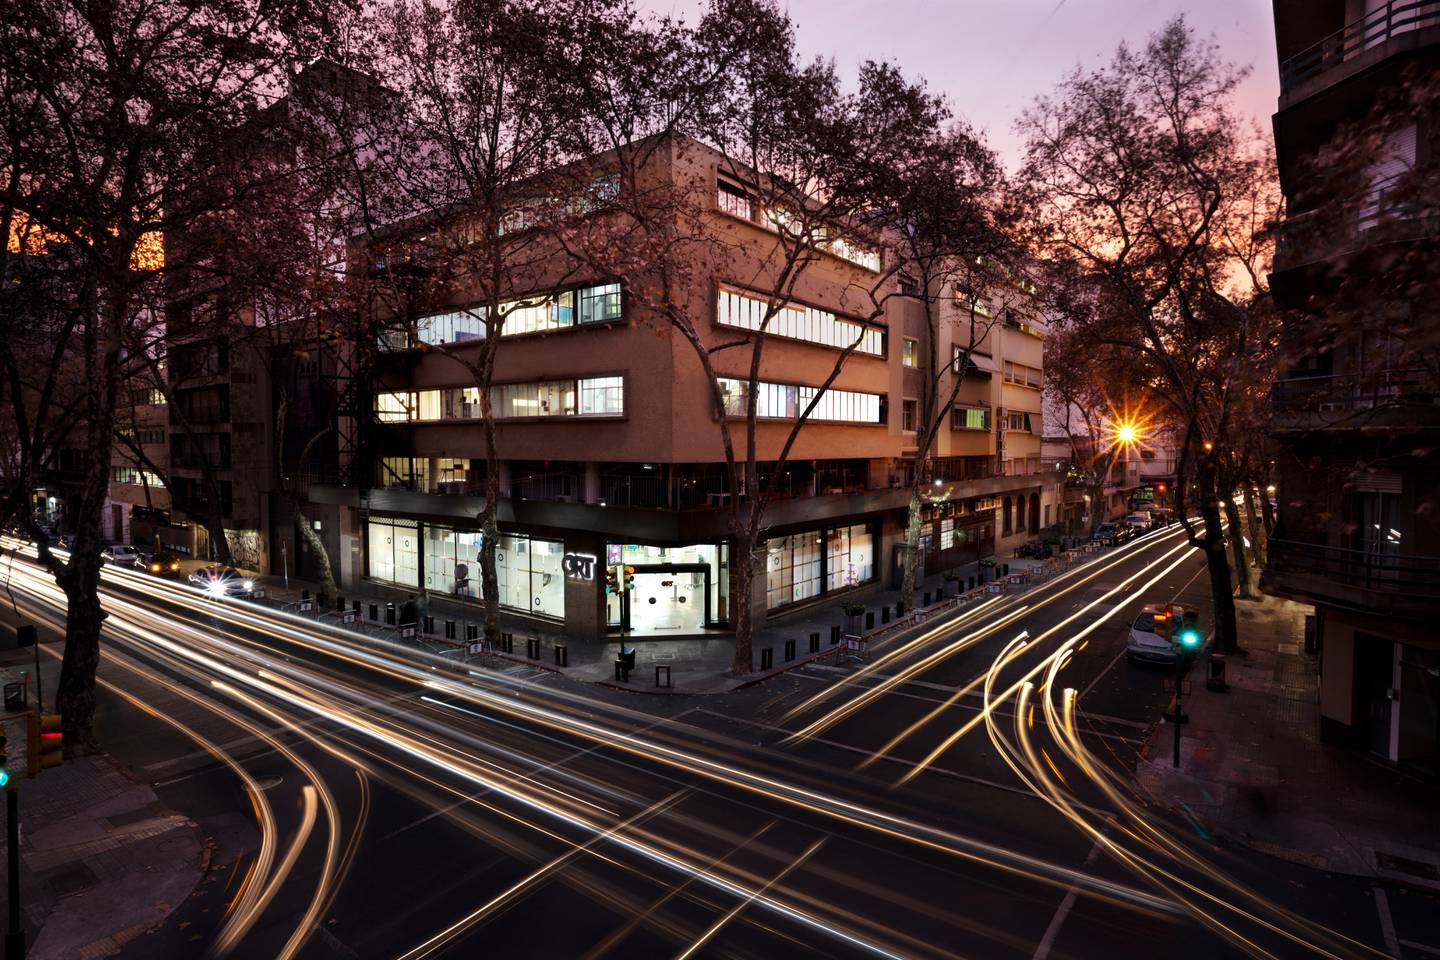 La sede central de la Universidad ORT, ubicada en el centro de Montevideo. Fotografía: Imágenes cedidas por la Universidad ORT.